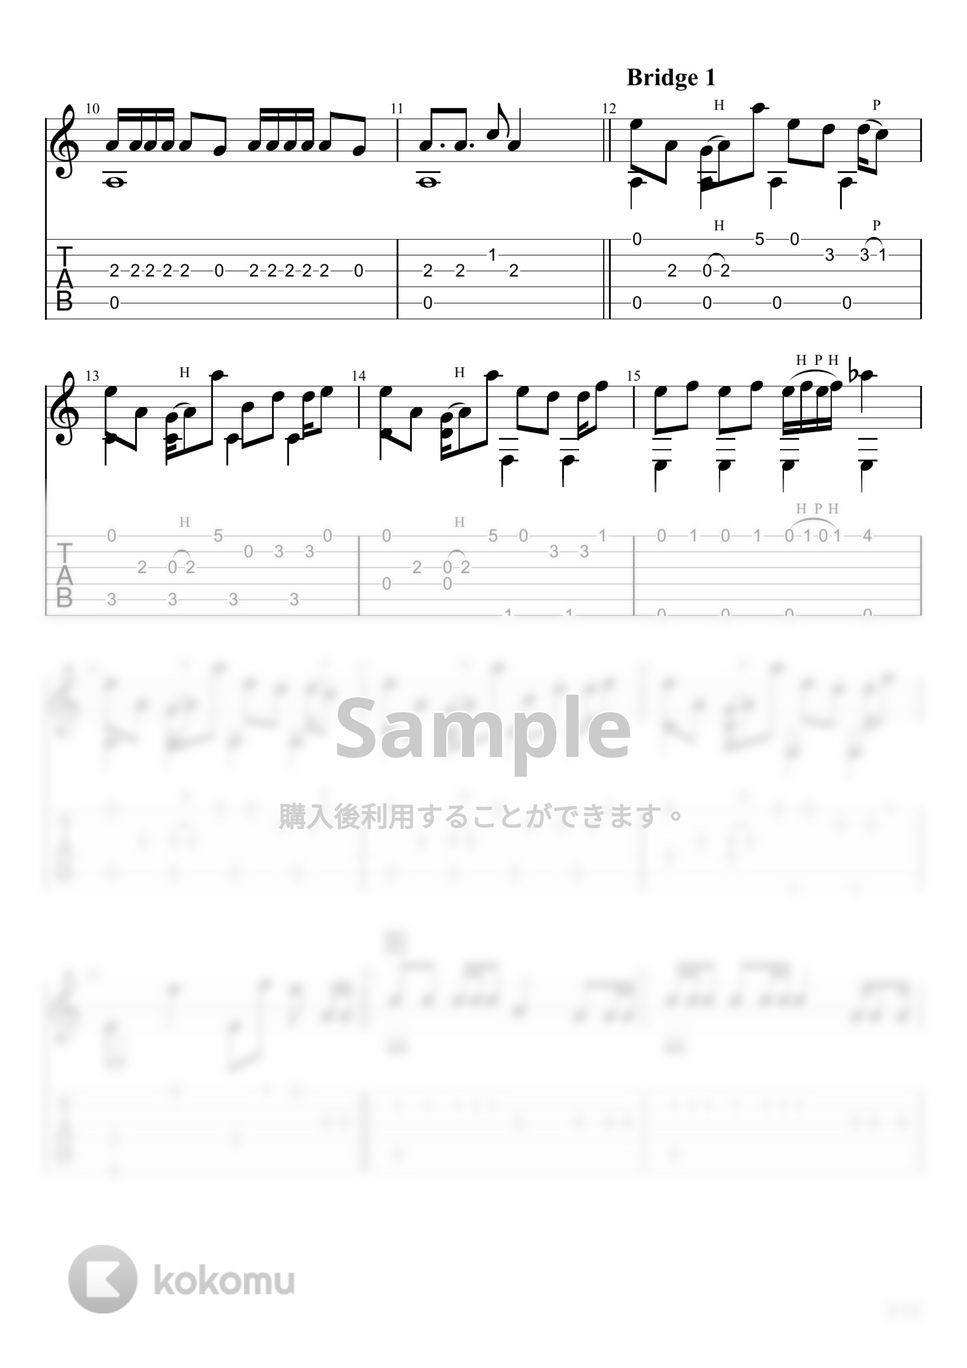 ピノキオピー - 転生林檎 (ソロギター) by u3danchou